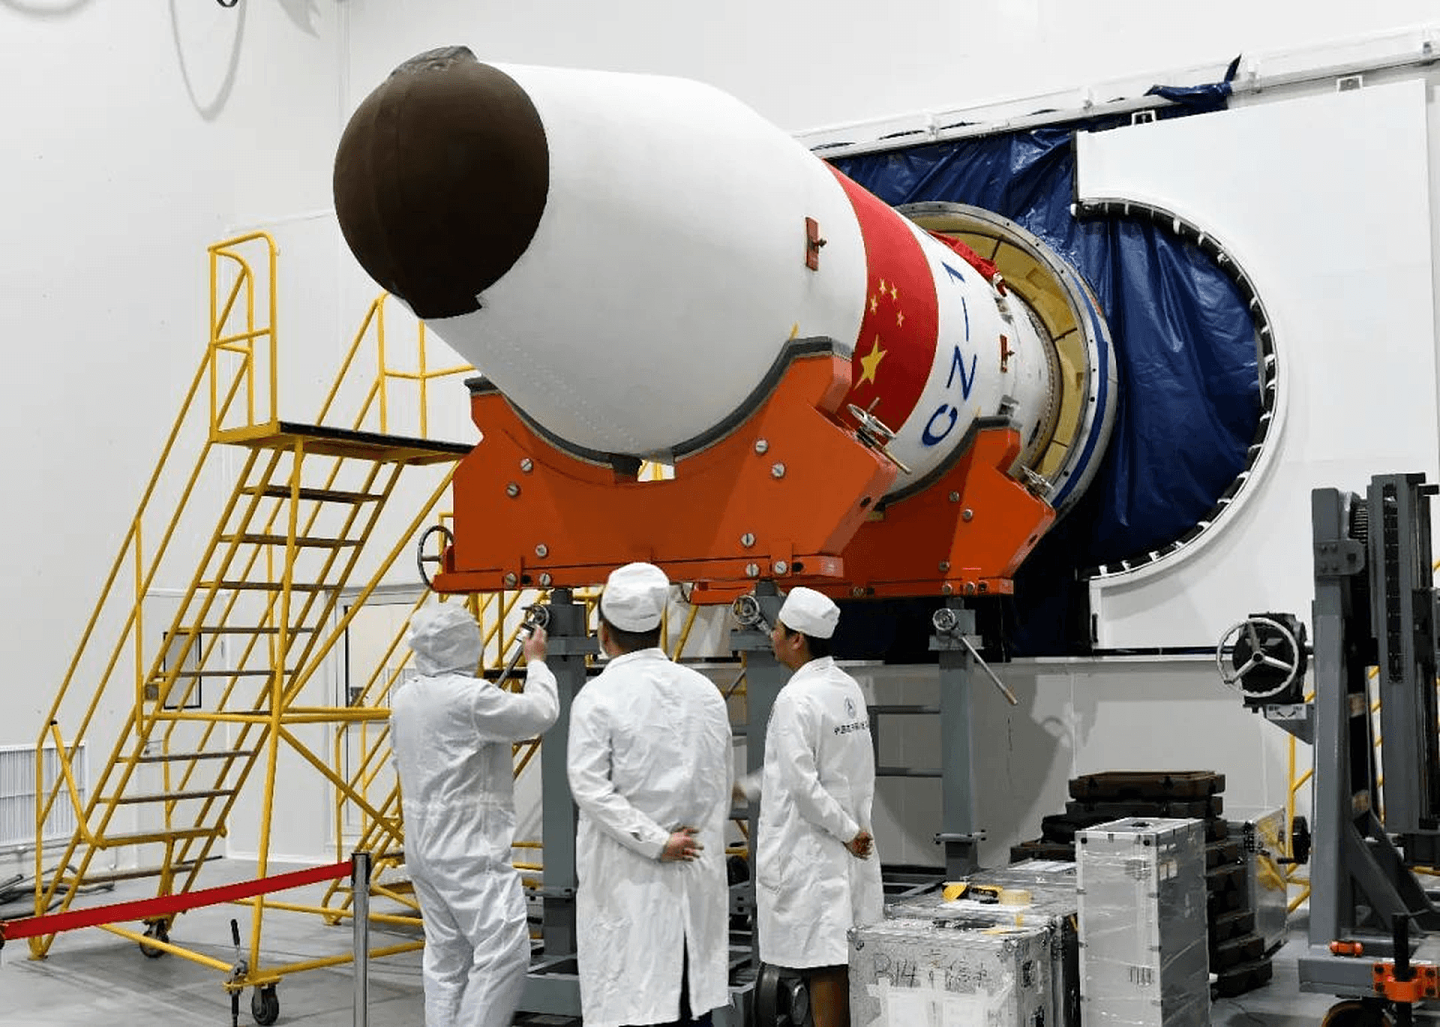 “吉林一号”高分03-1组卫星由长光卫星技术有限公司研制。此次发射验证了海上发射的可靠性。（微博@China航天）